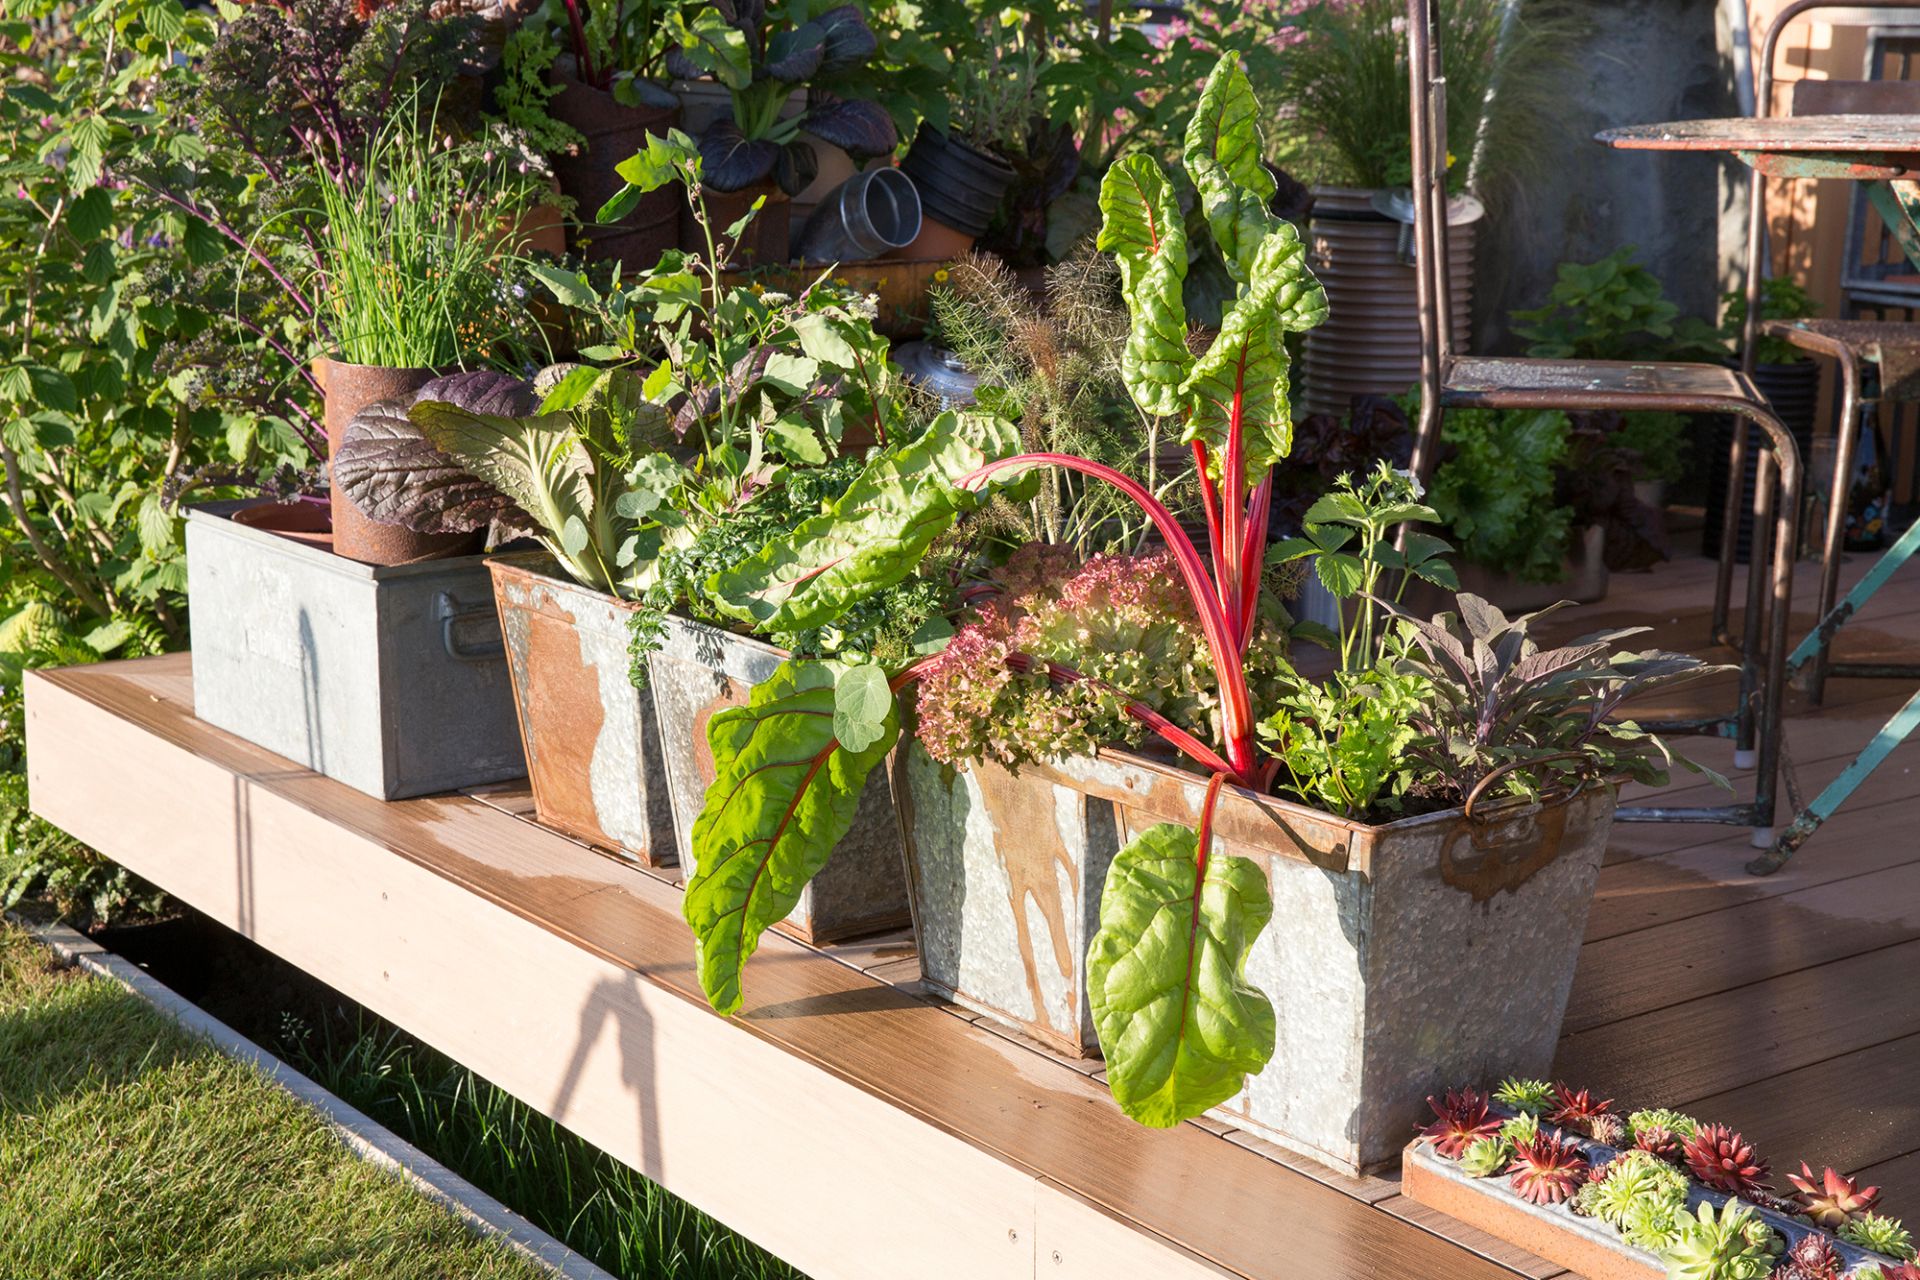  patio container vegetable garden ideas